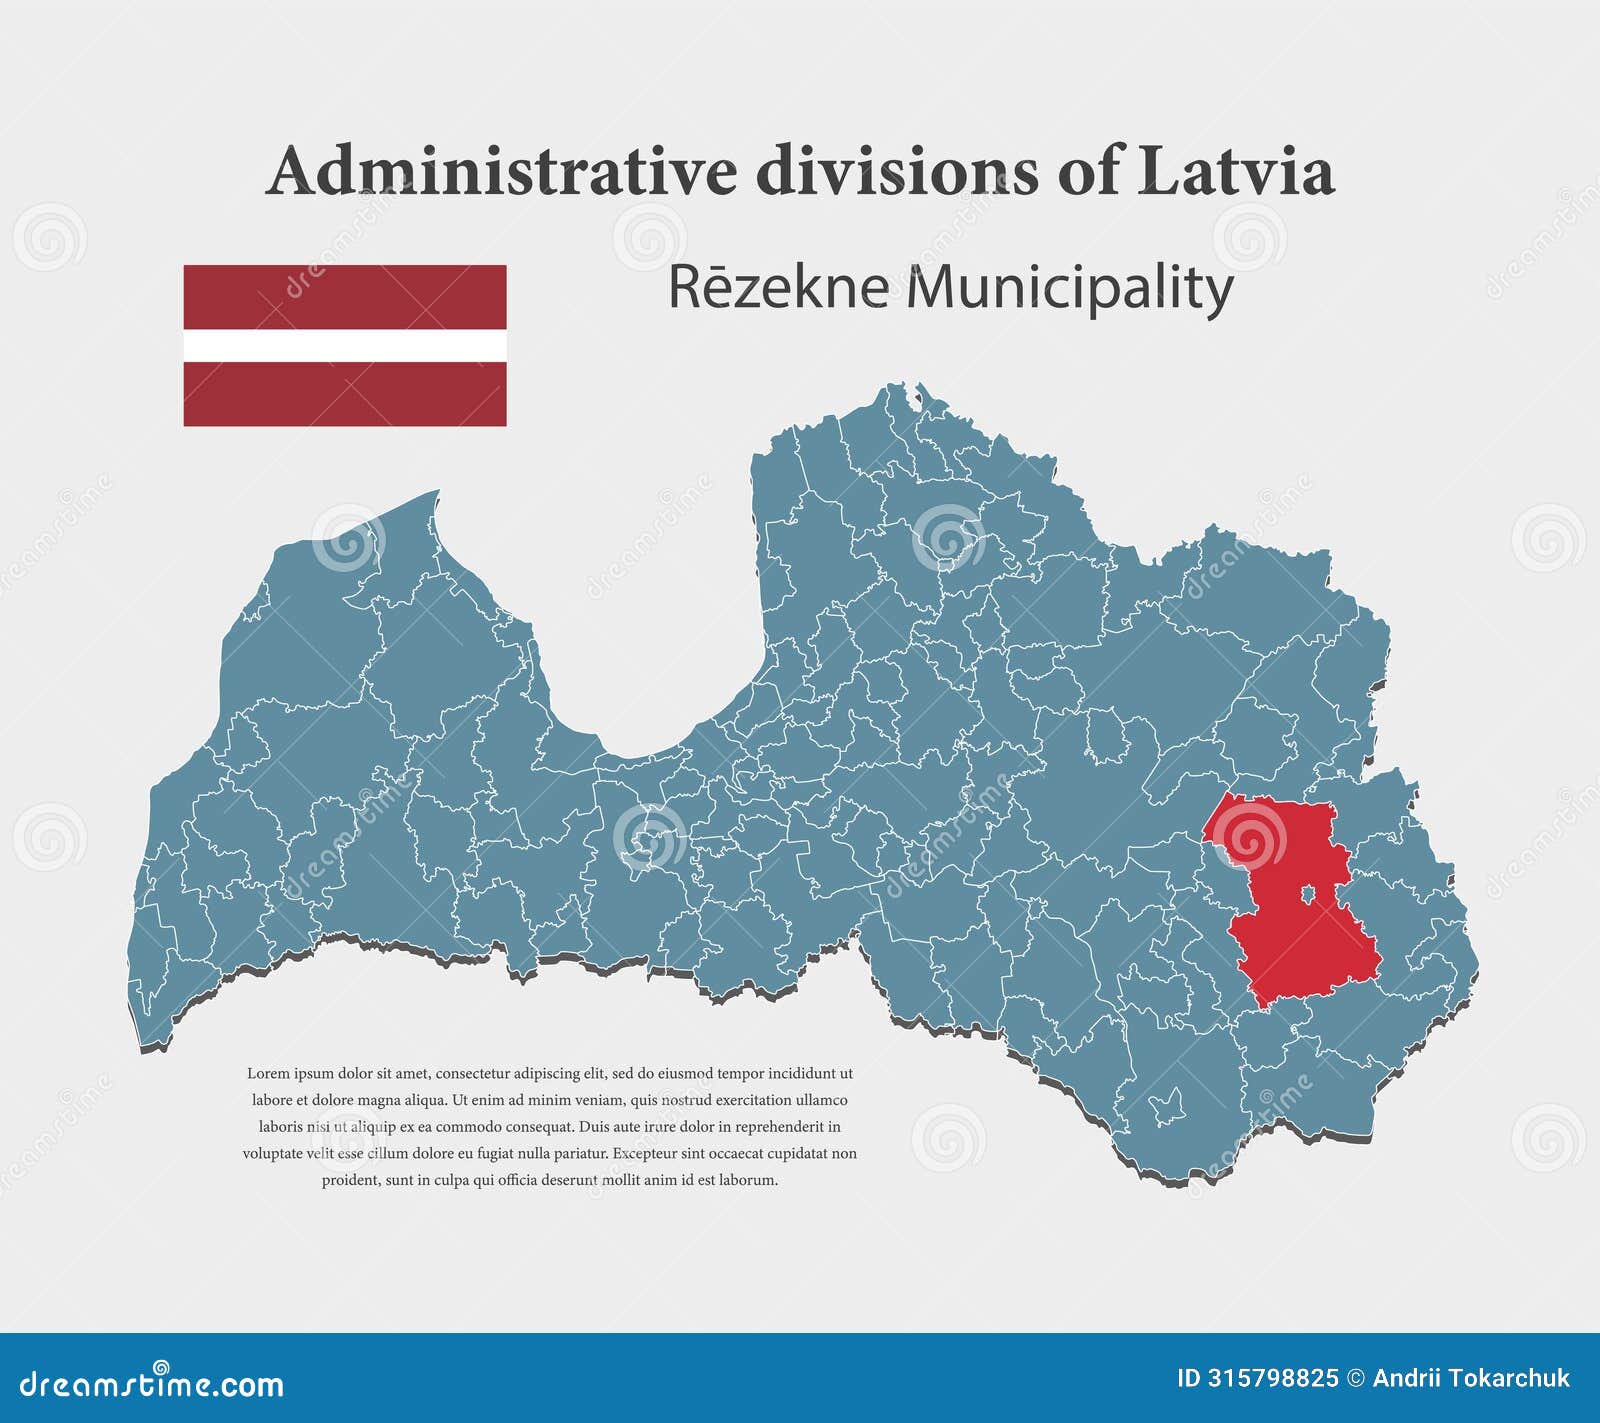  map latvia, rezekne municipality